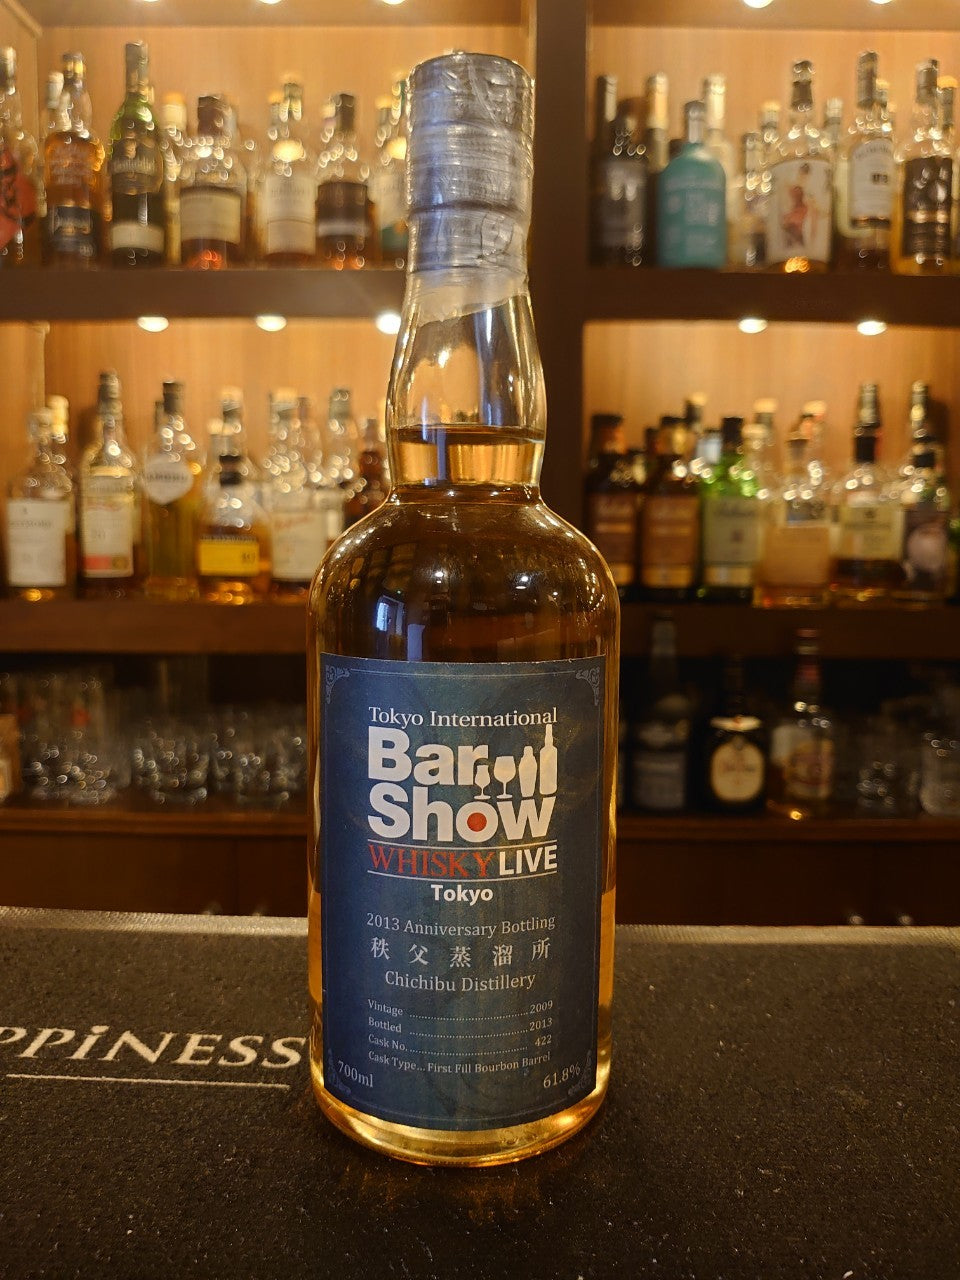 イチローズモルト 秩父 Bar Show 2013— Rum＆Whisky リトルハピネス